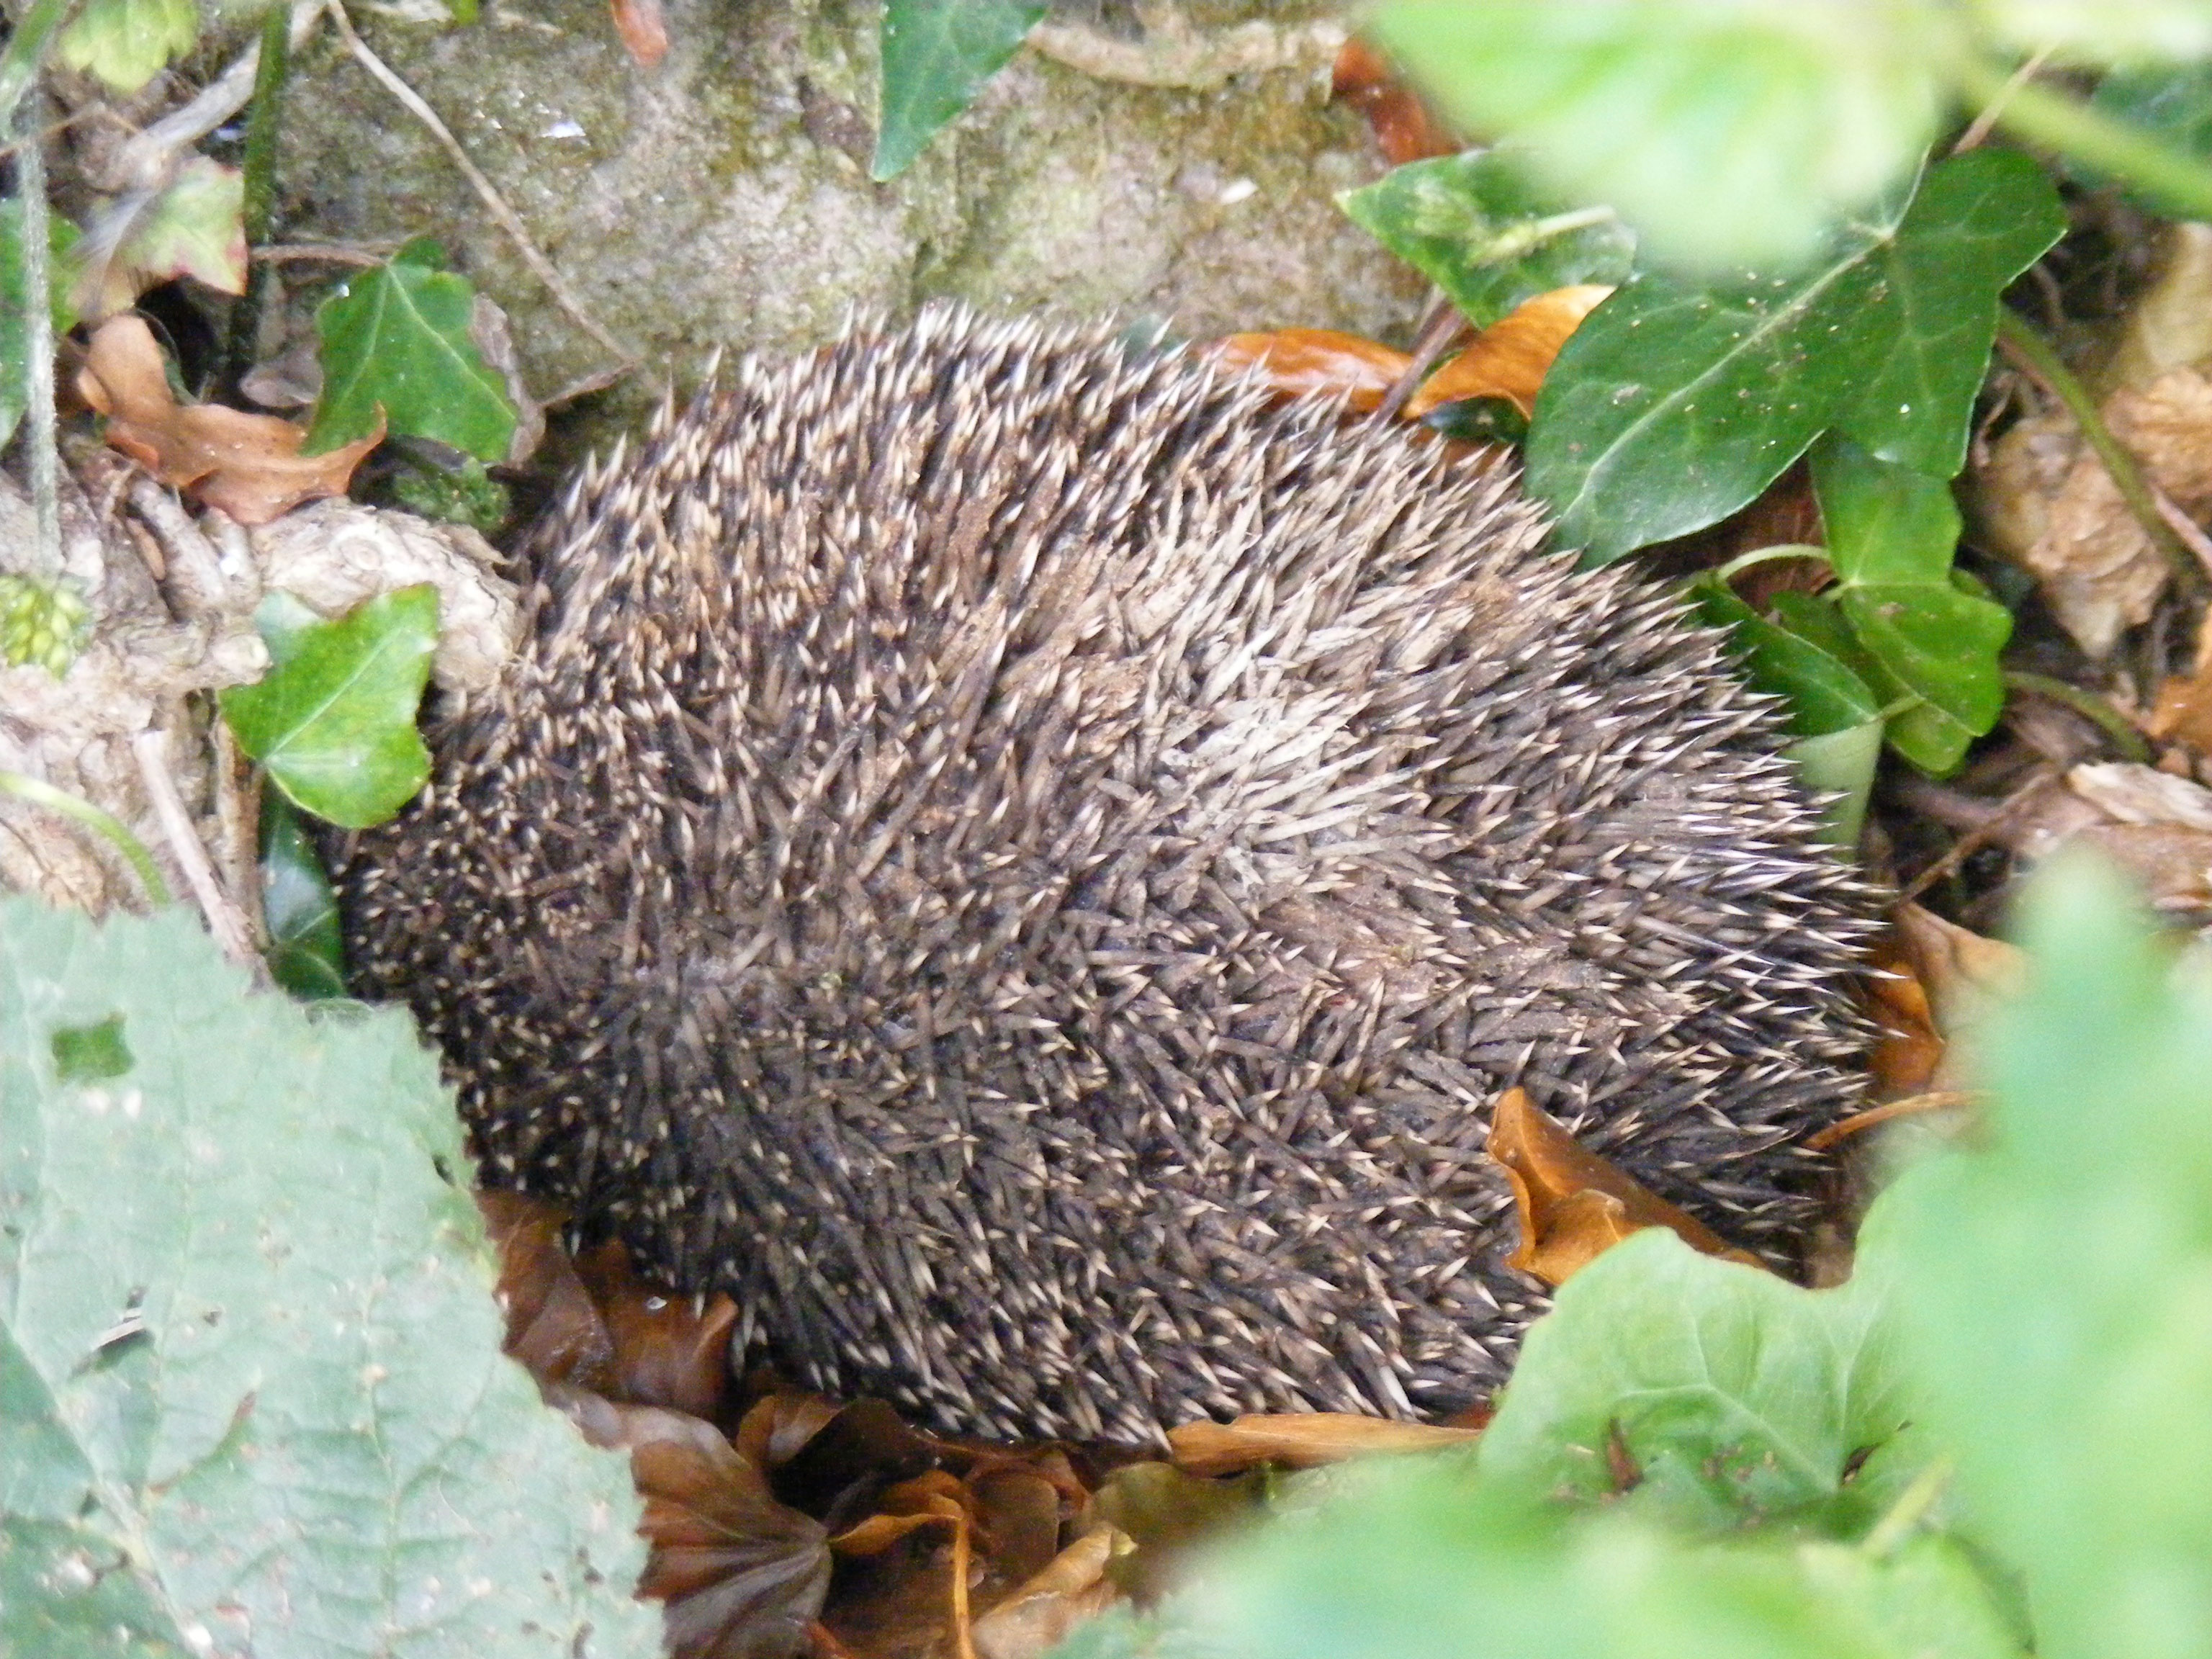 Alive and Spiky! A Hedgehog Calls